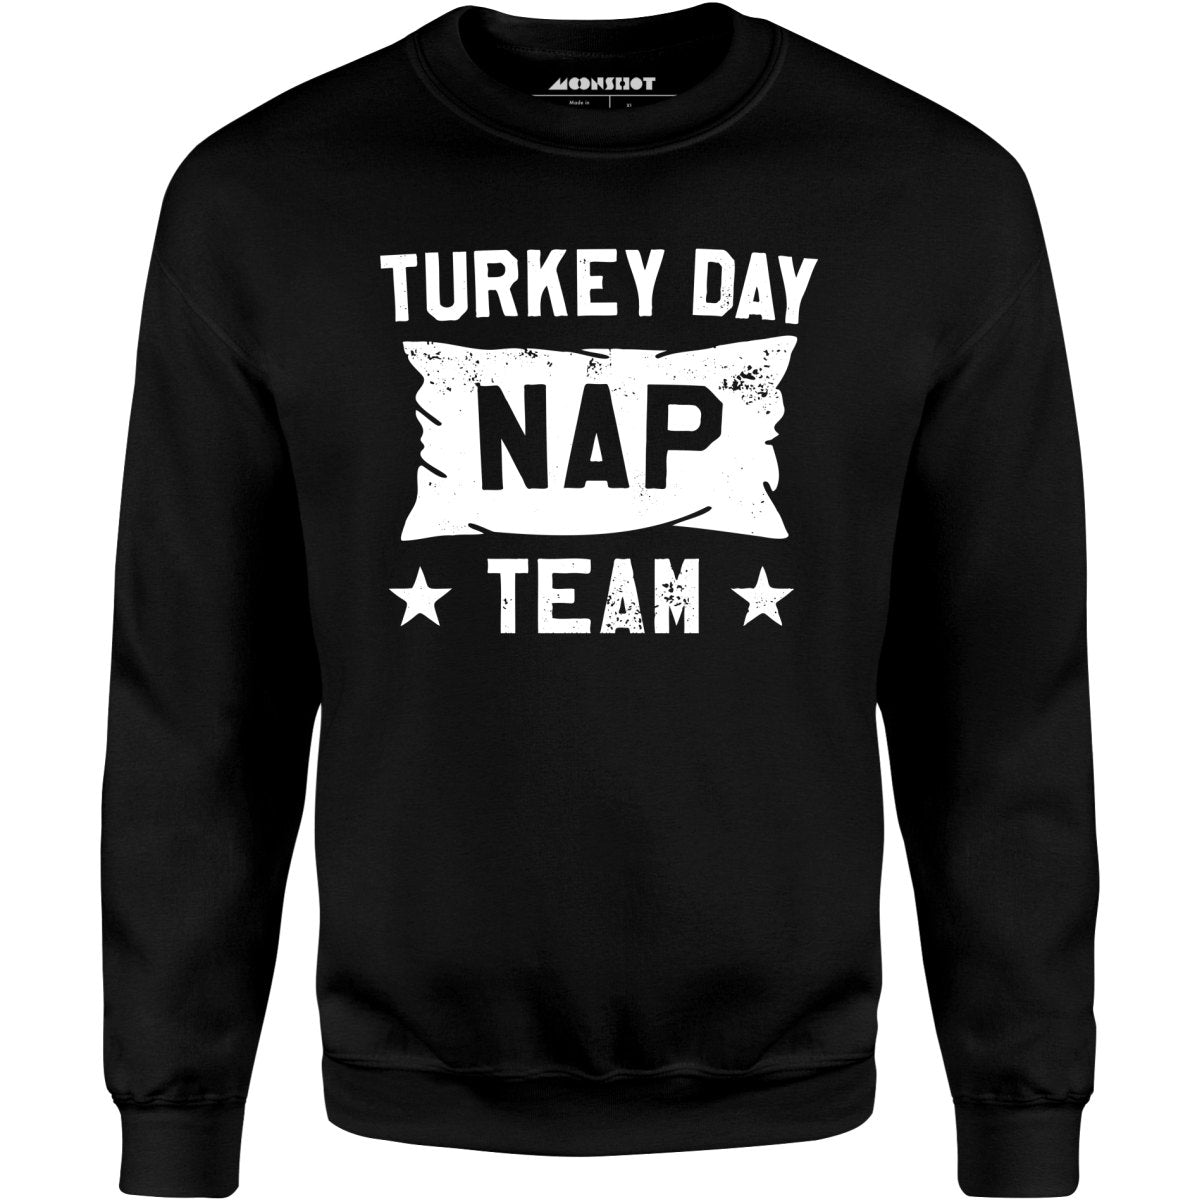 Turkey Day Nap Team - Unisex Sweatshirt